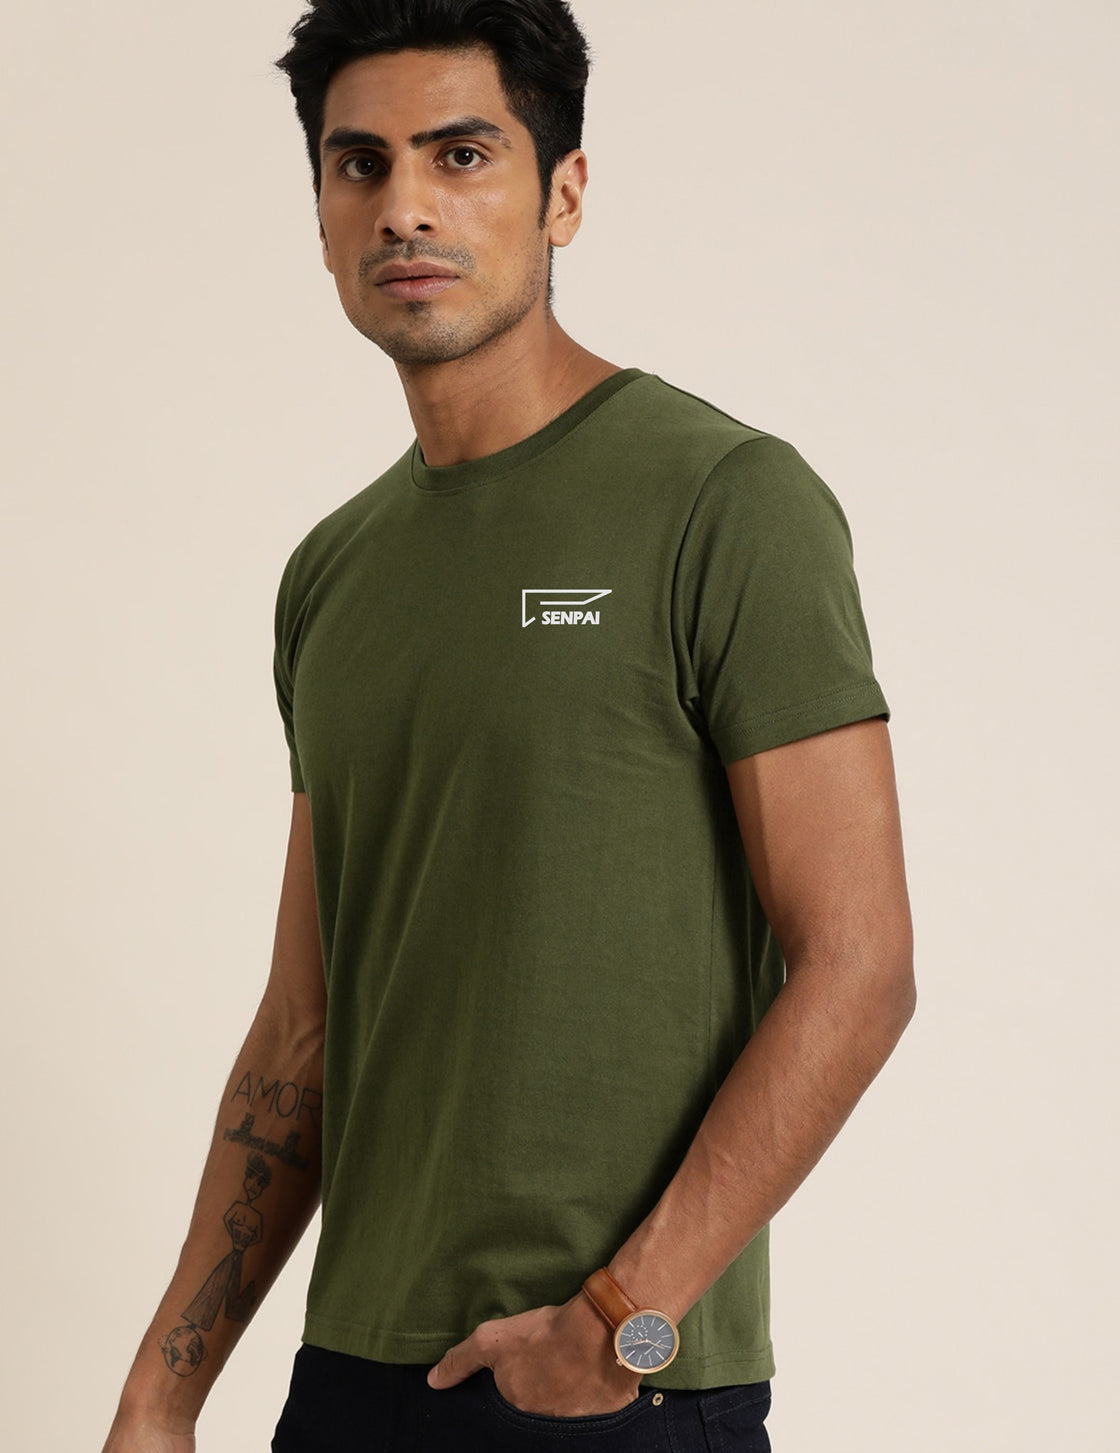 Men’s Sports Wear Round Neck Green T-Shirt